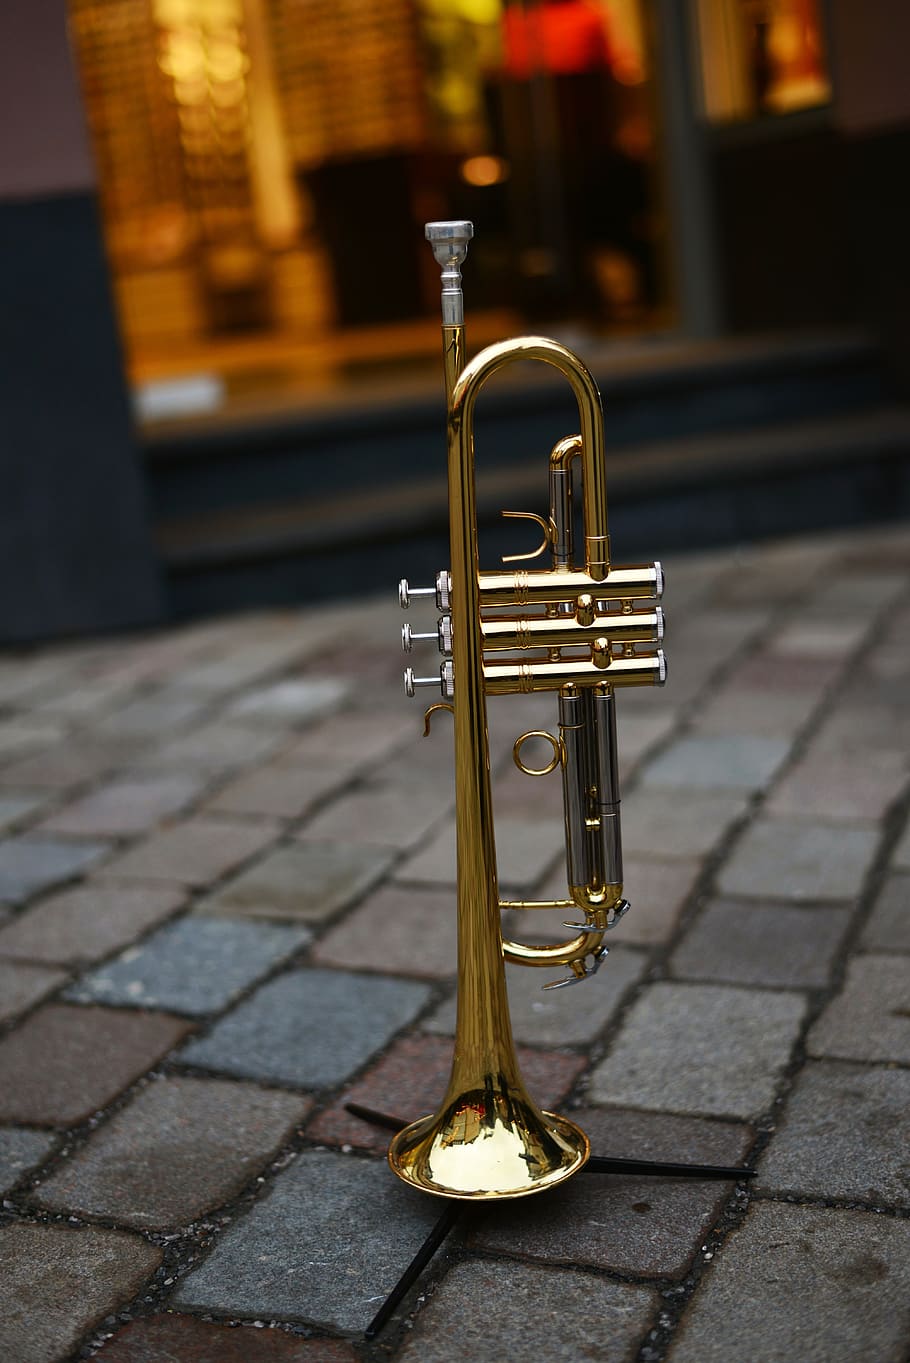 trumpet, brass instrument, music, instrument, musical instrument, brass, wind instrument, gloss, gold, street music